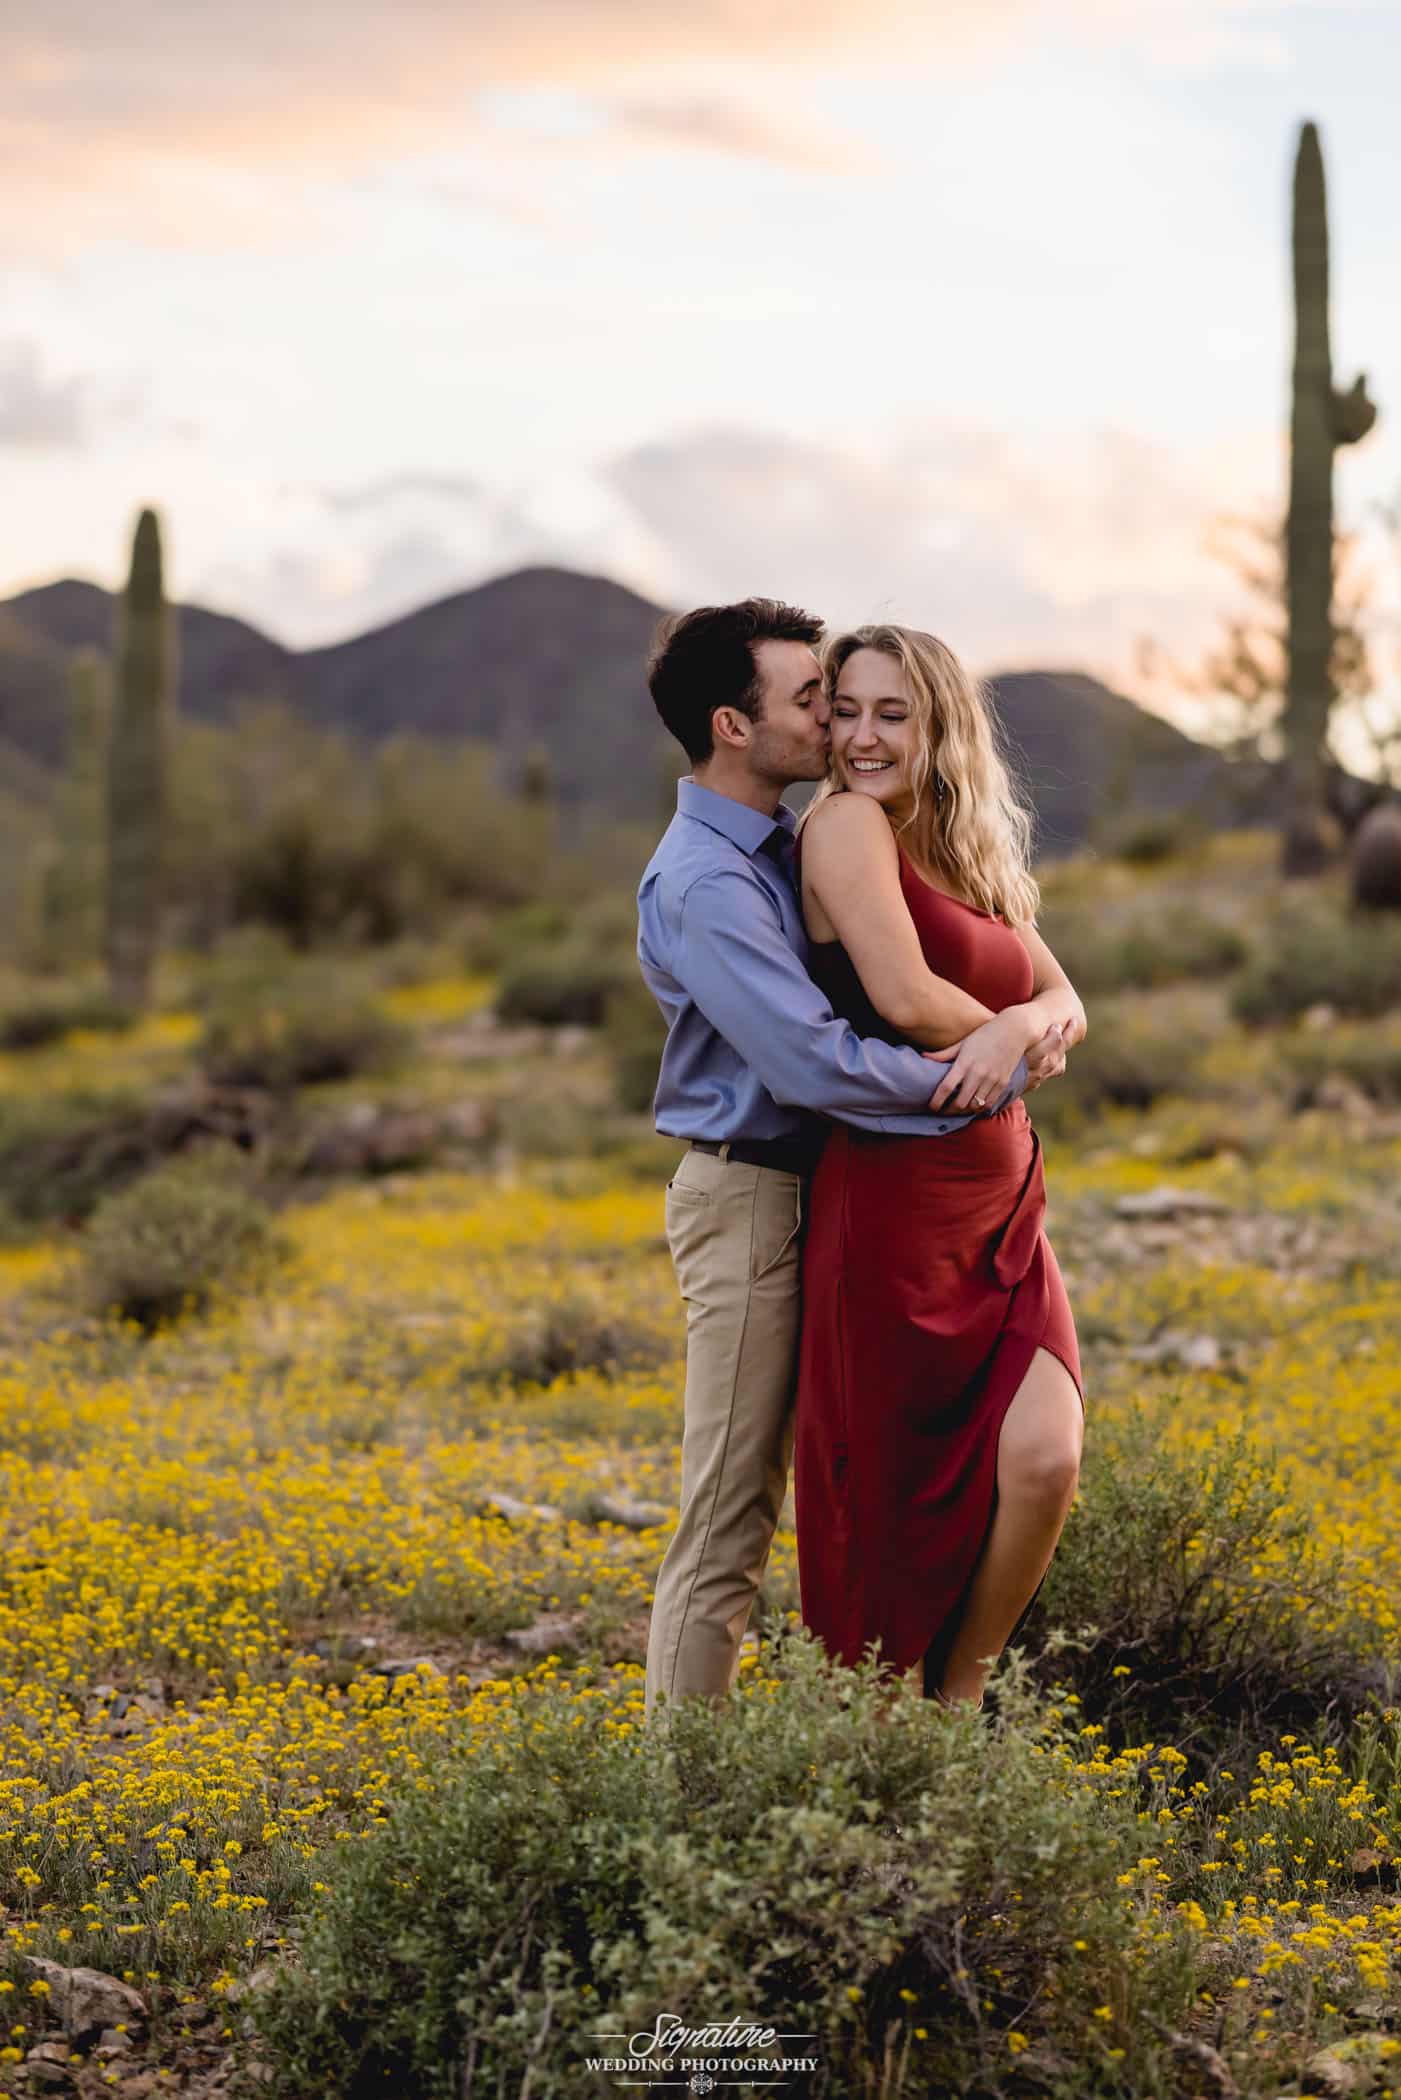 Man hugging woman in desert